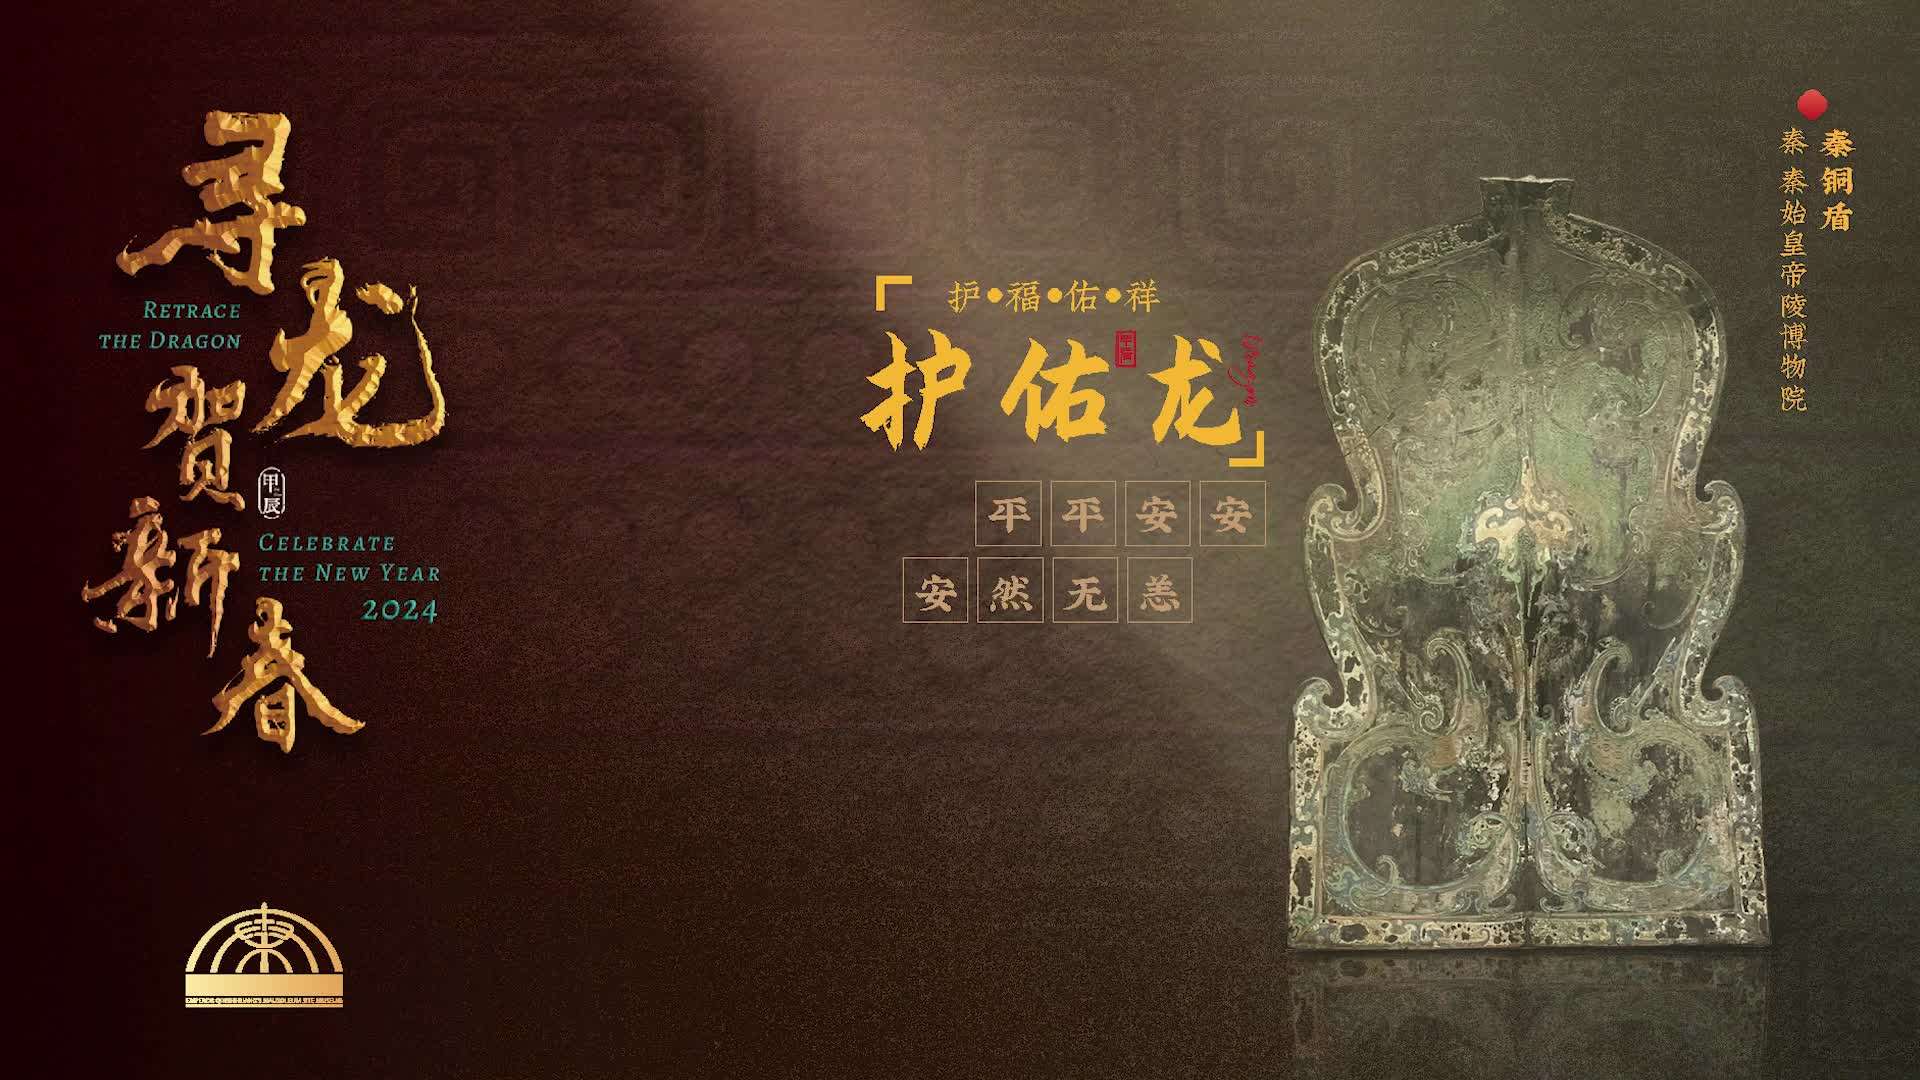 秦始皇陵博物馆-寻龙贺新春